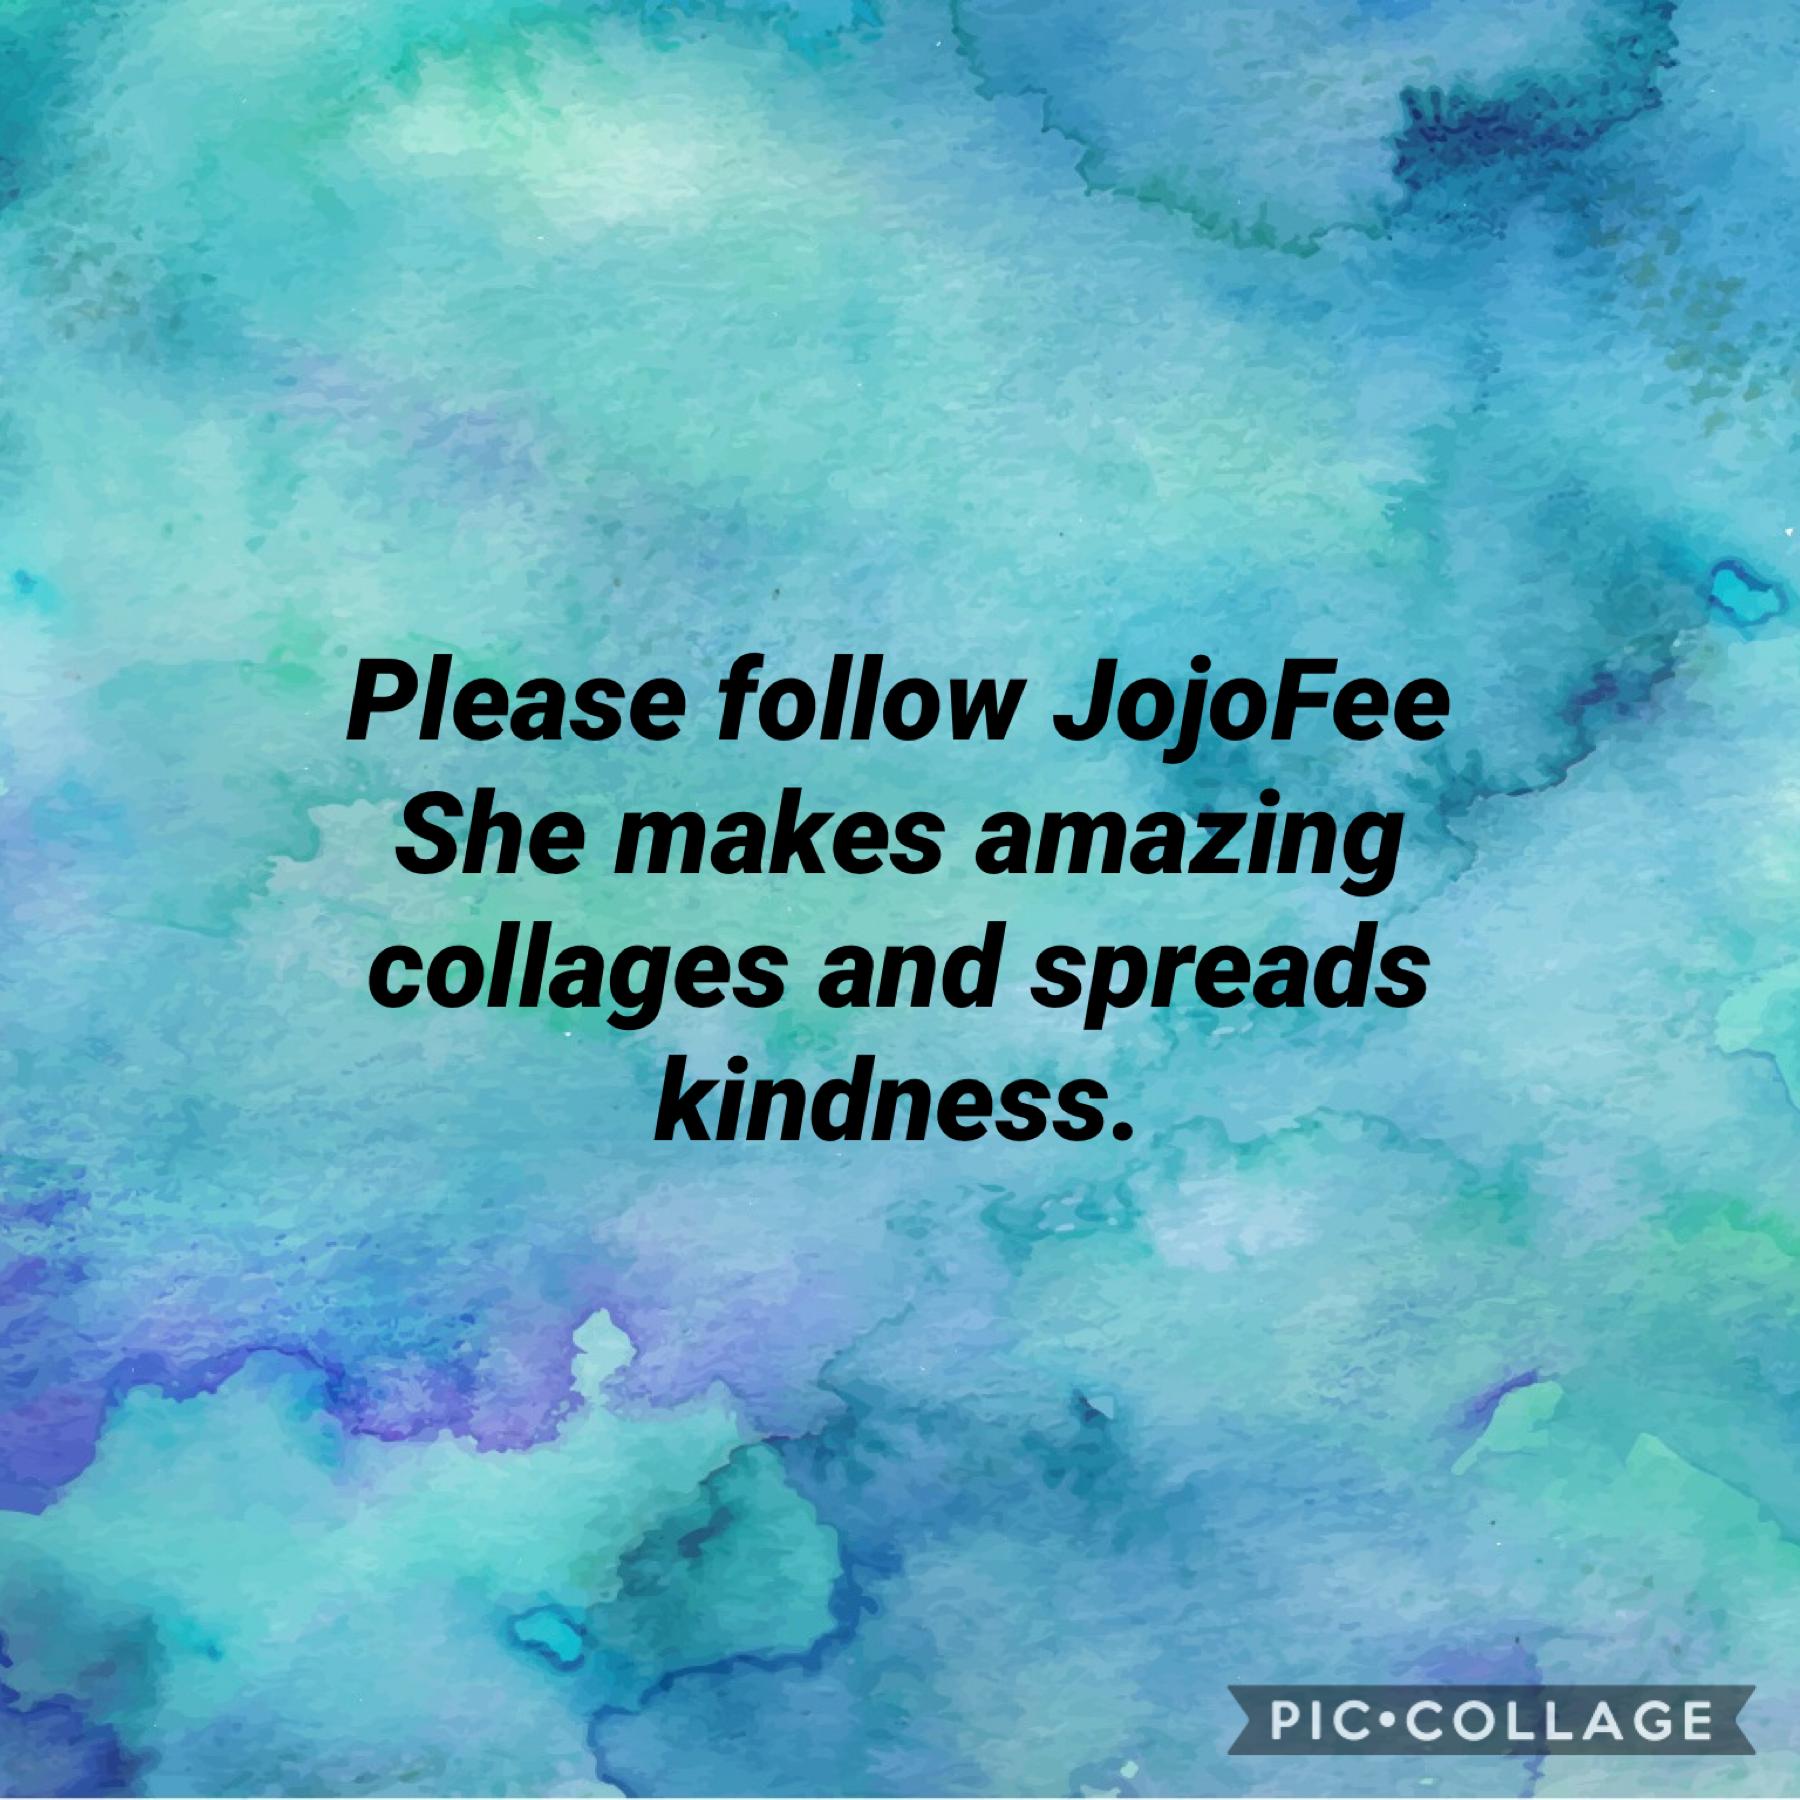 Please follow her